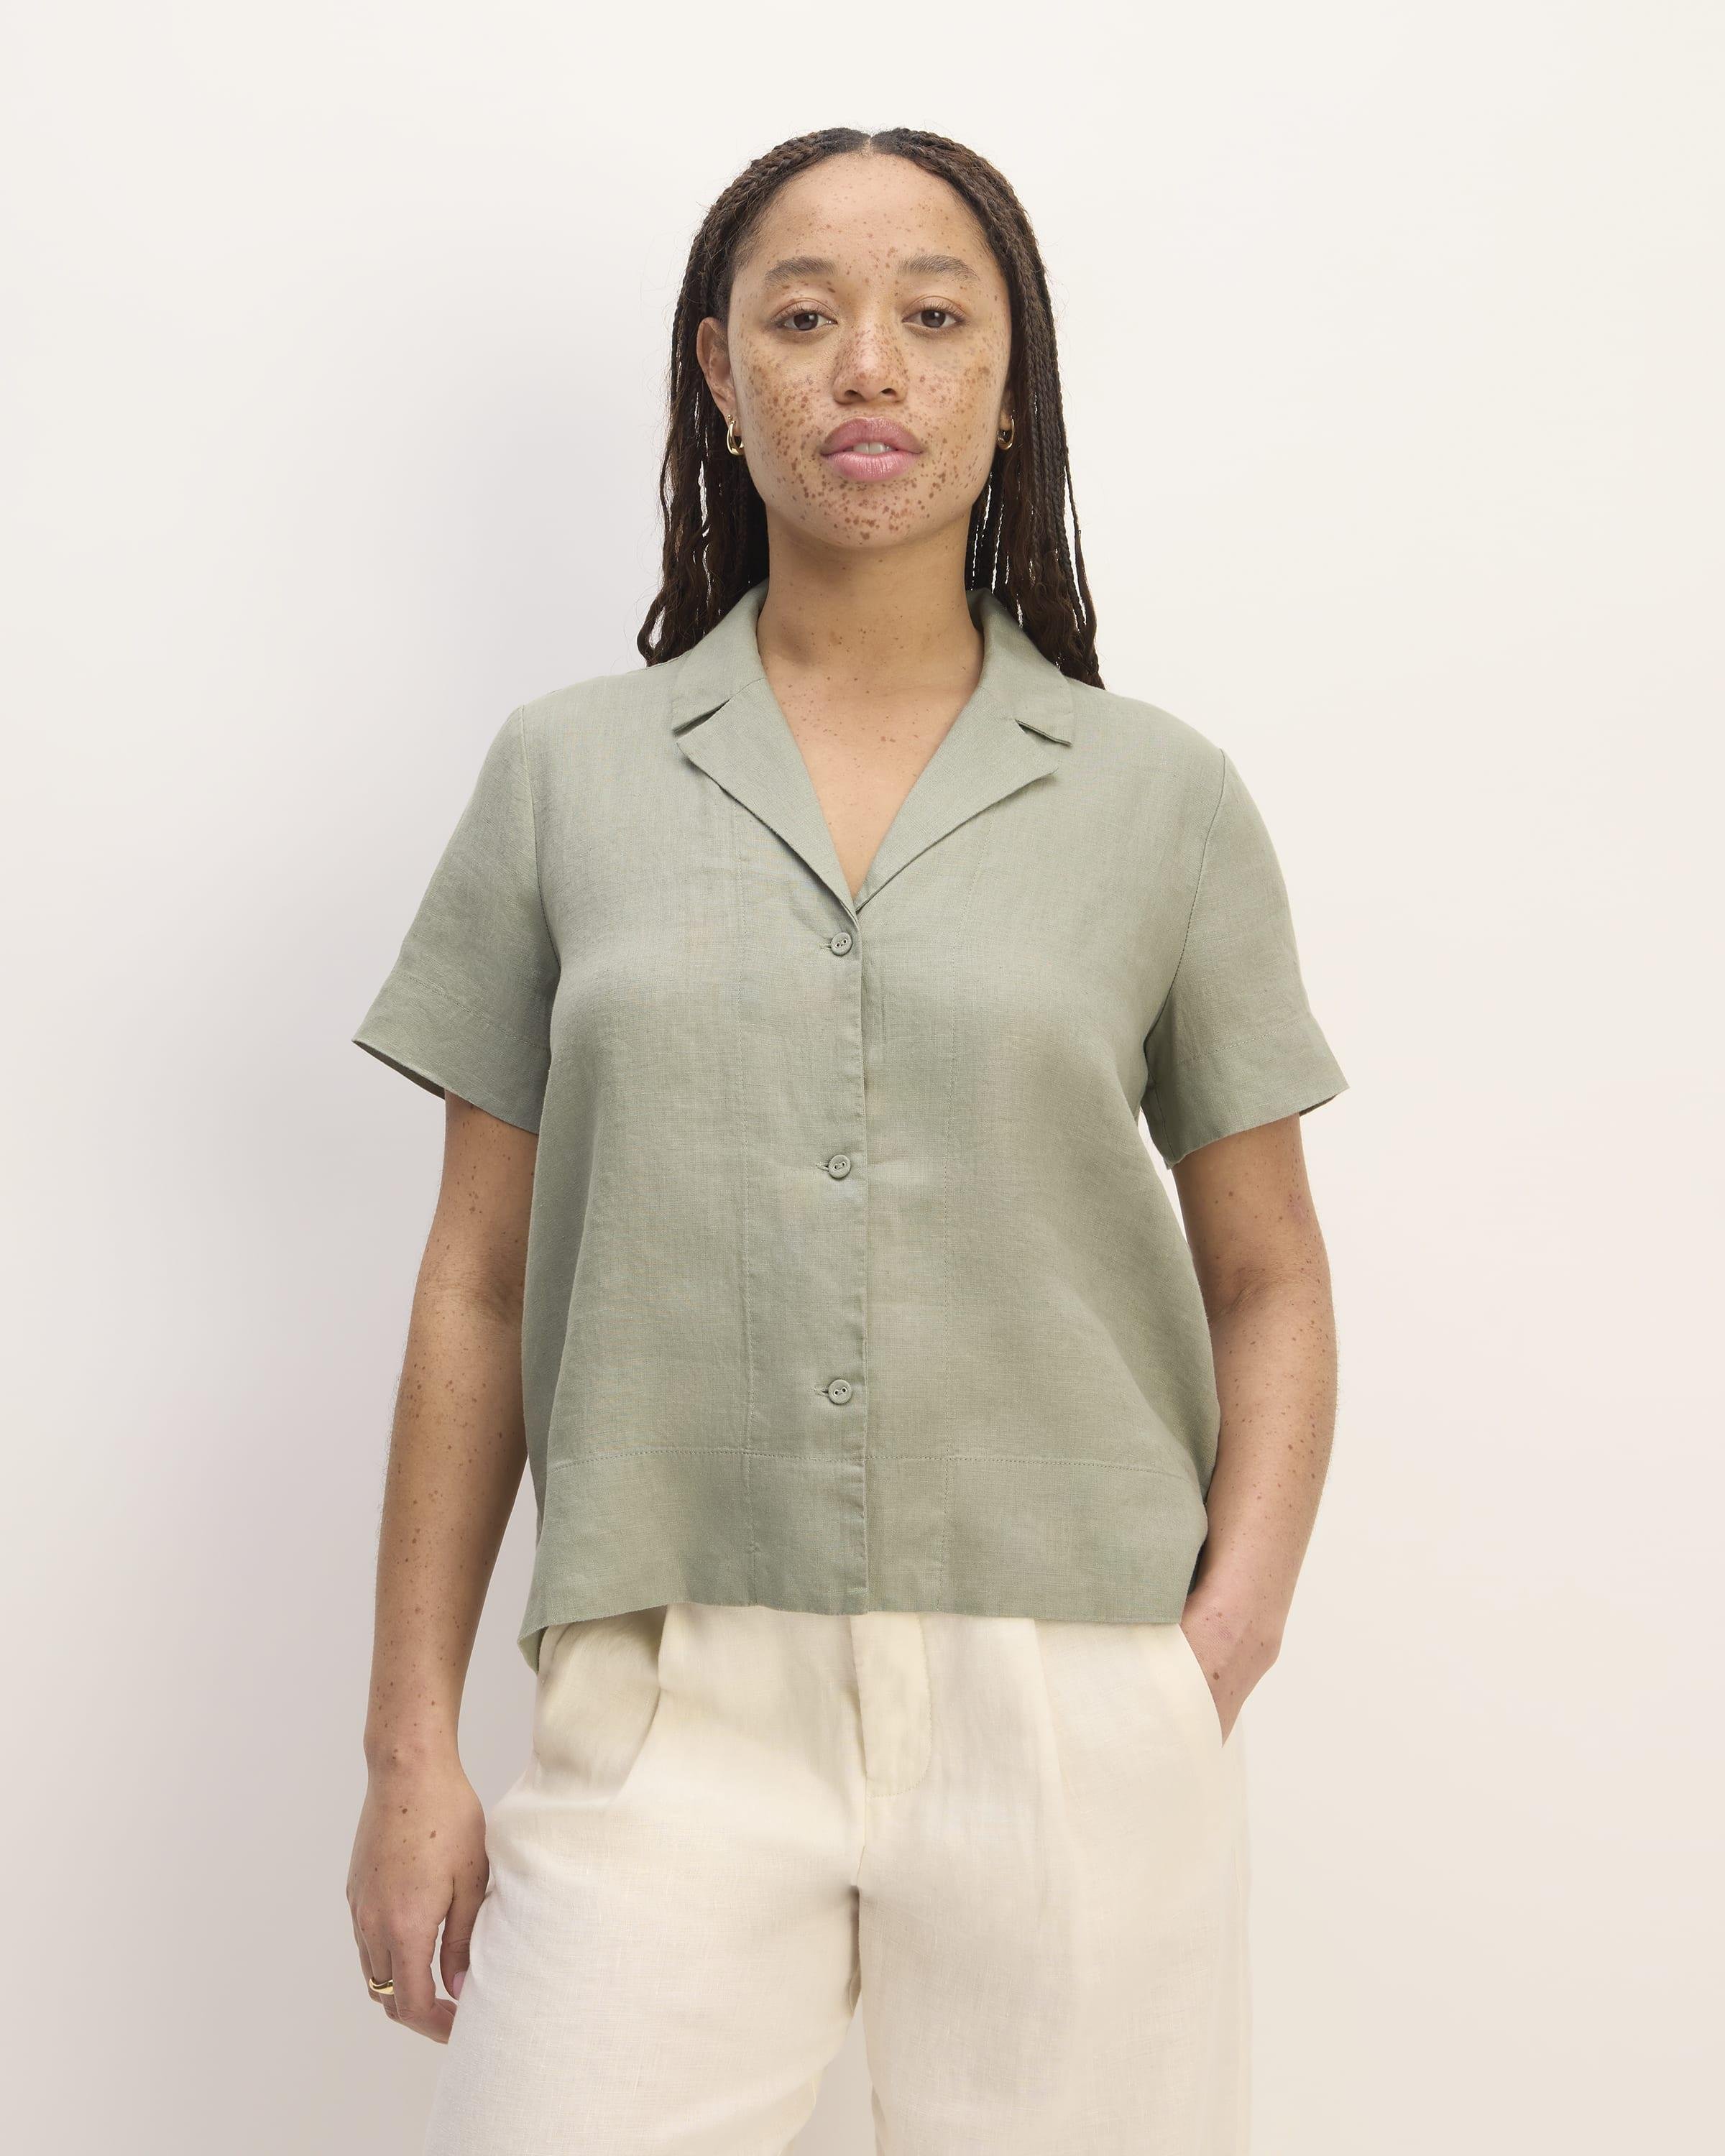 The Linen Short-Sleeve Notch Shirt by EVERLANE